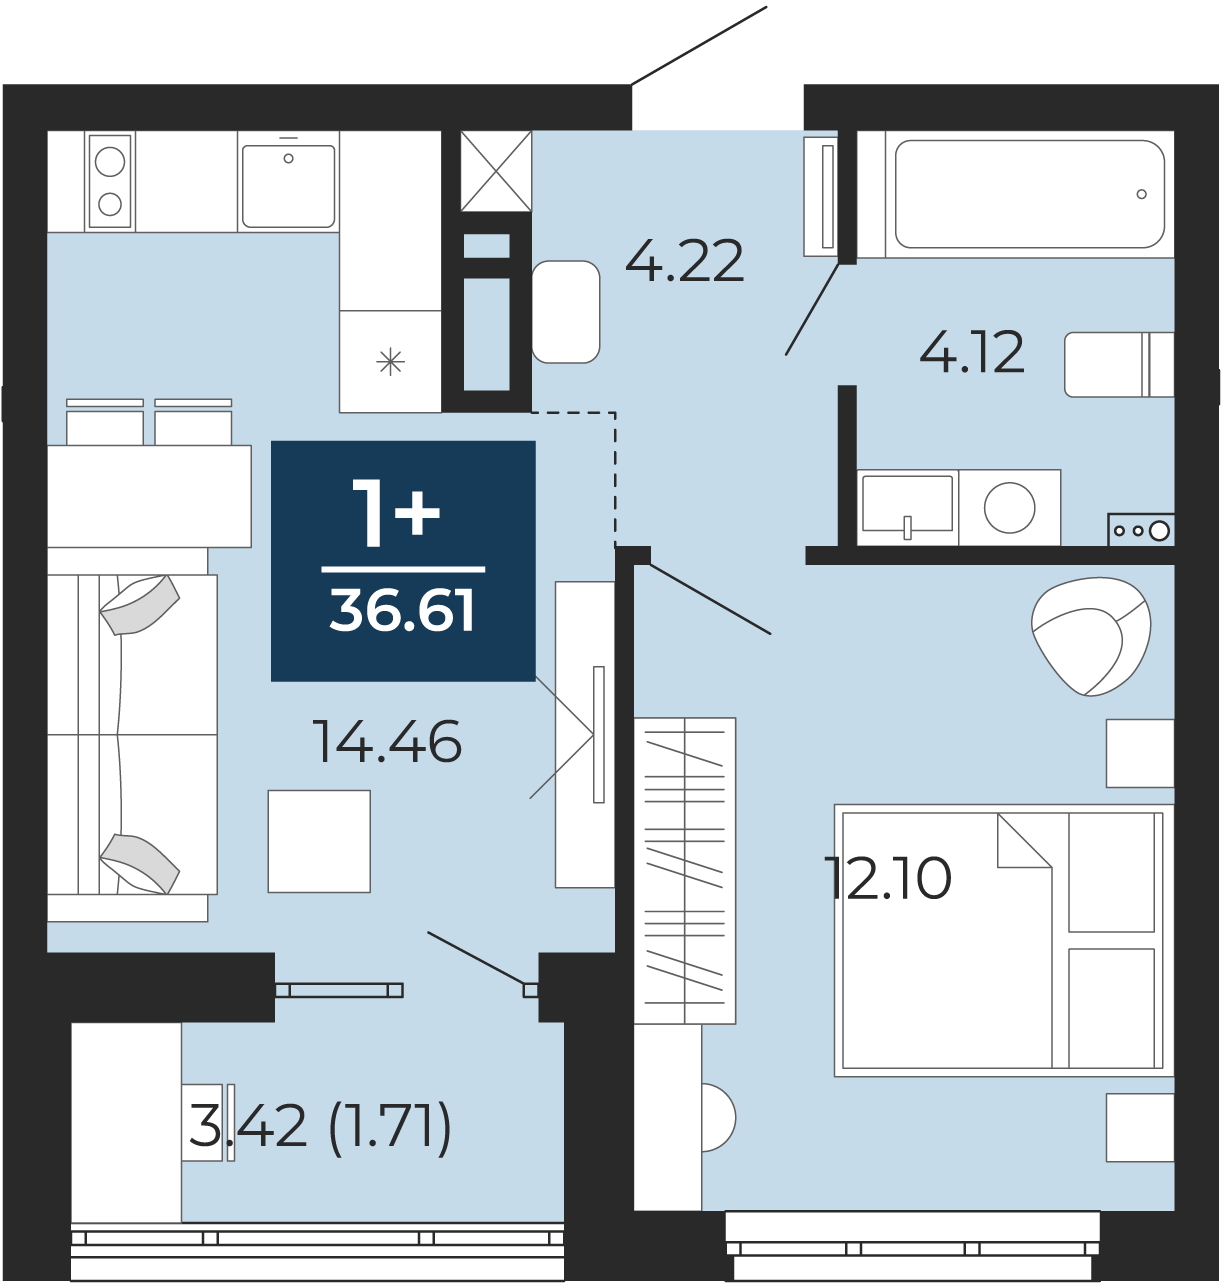 Квартира № 190, 1-комнатная, 36.61 кв. м, 2 этаж